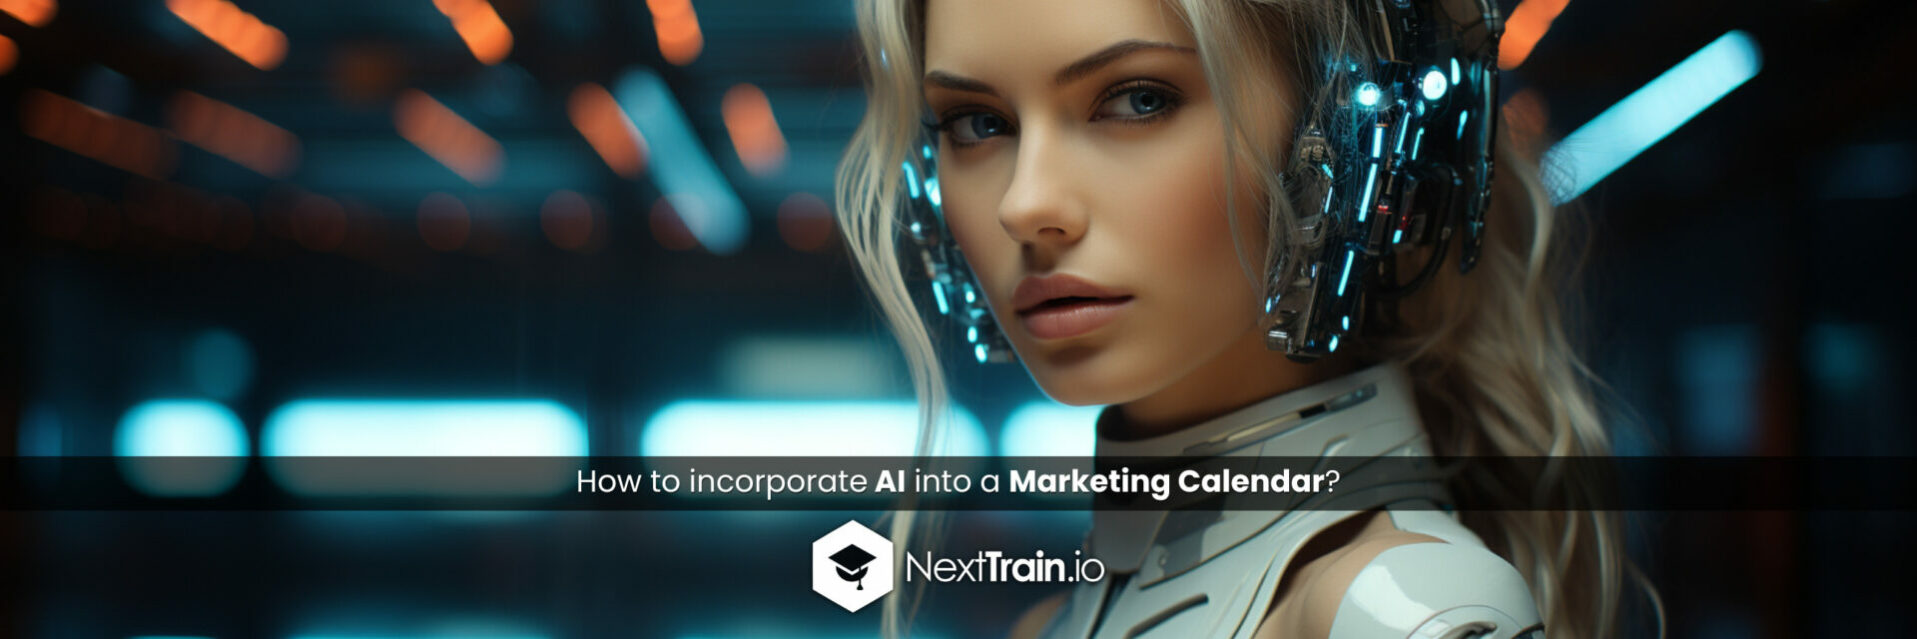 How to incorporate AI into a Marketing Calendar?